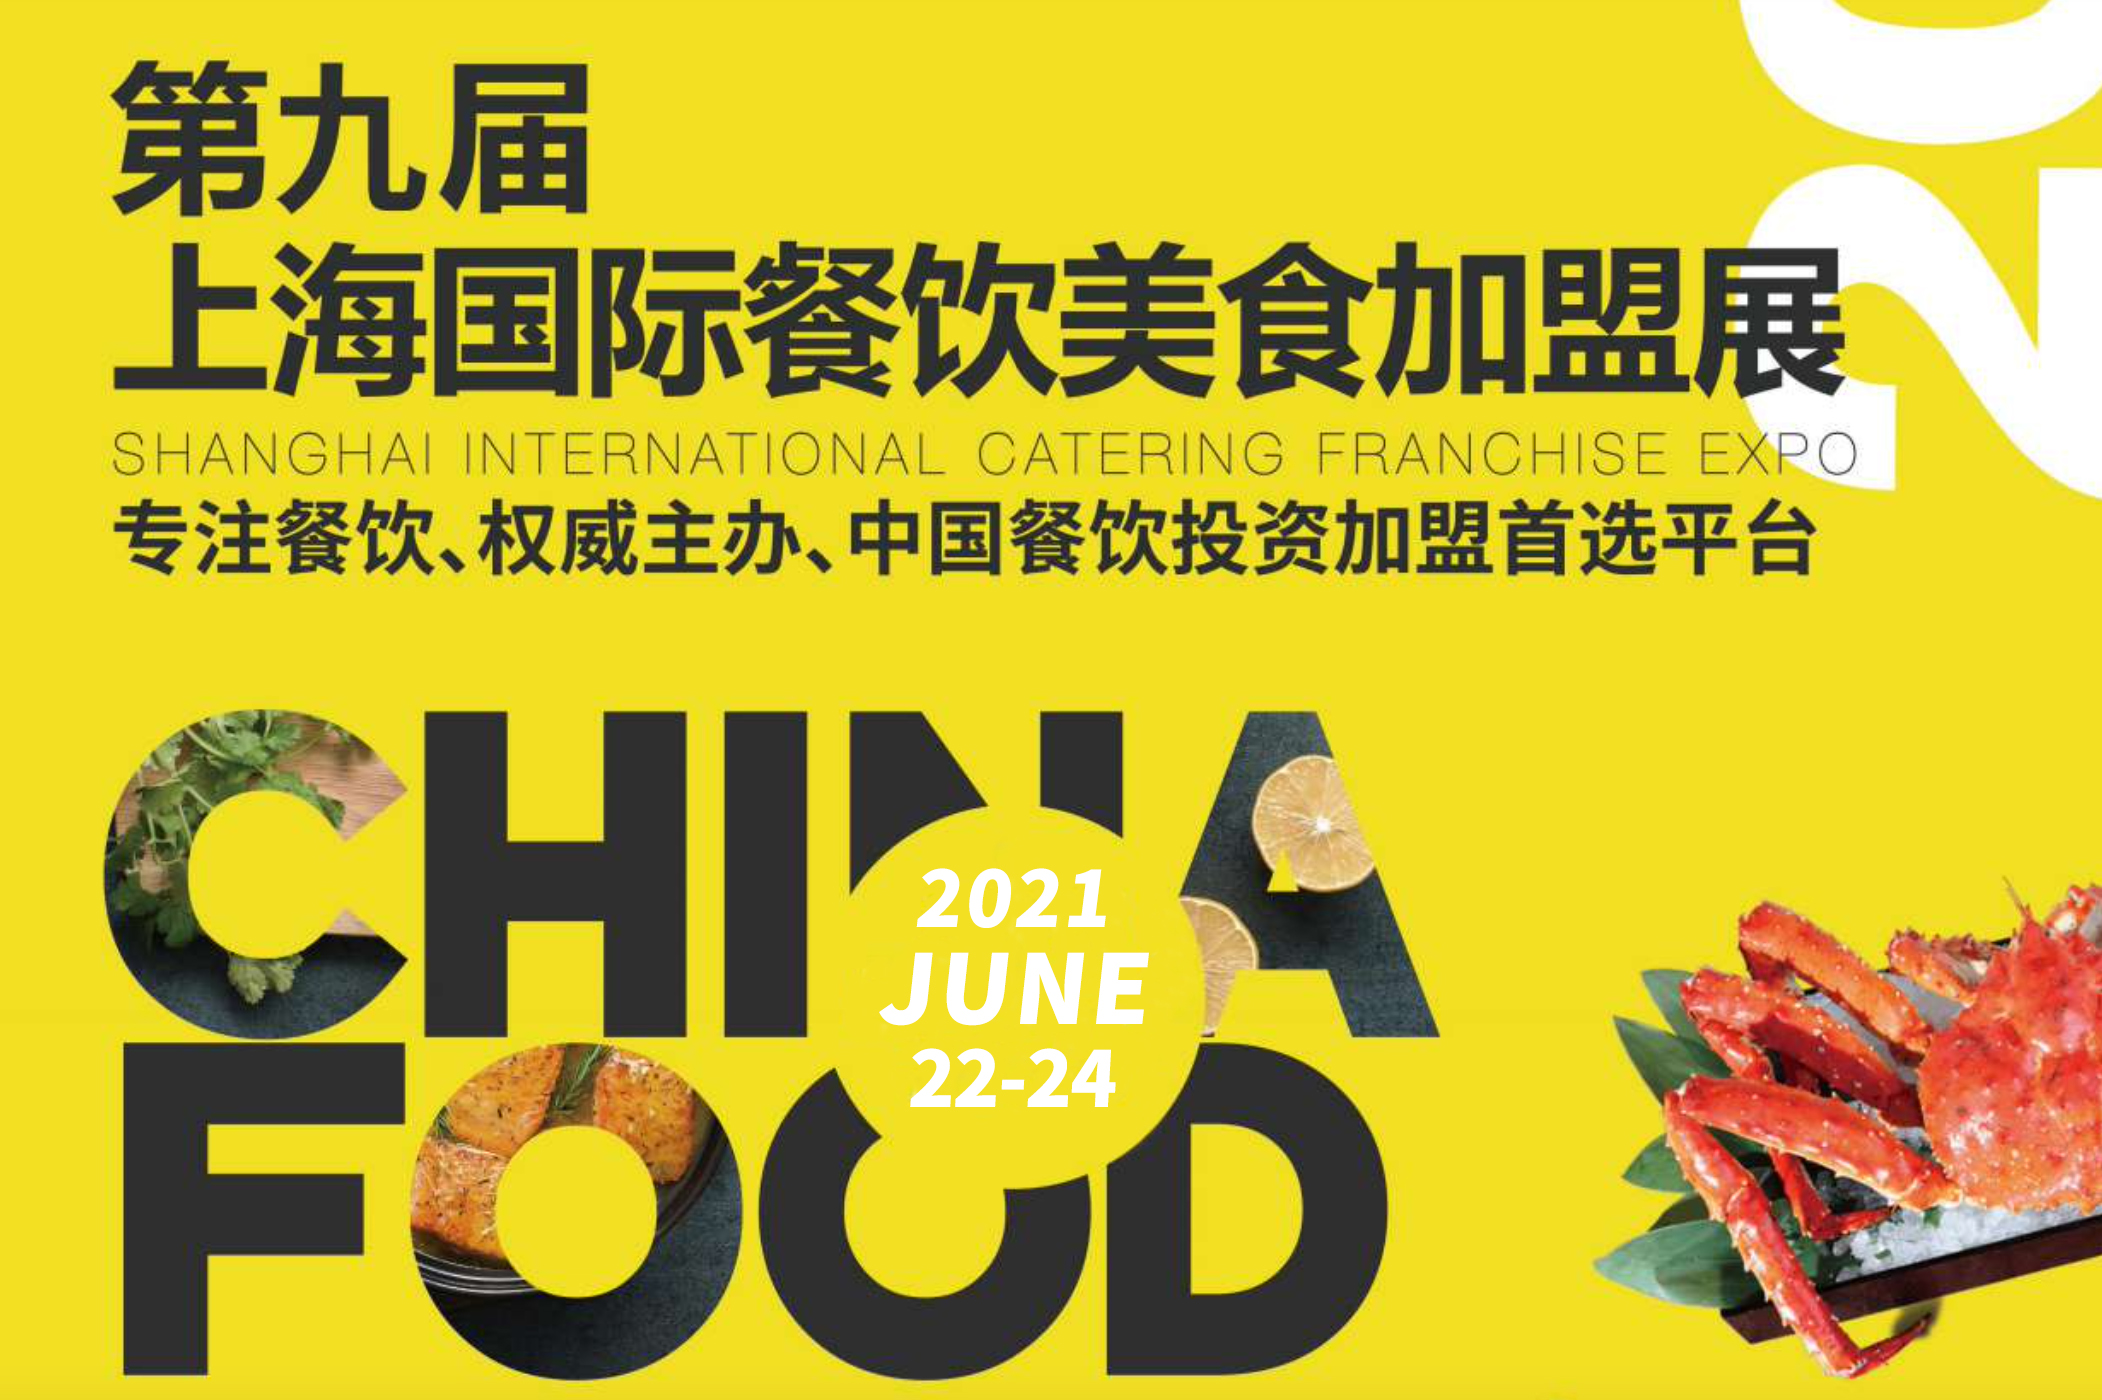 斑马精酿酒馆即将亮相2021 CHINA FOOD展会